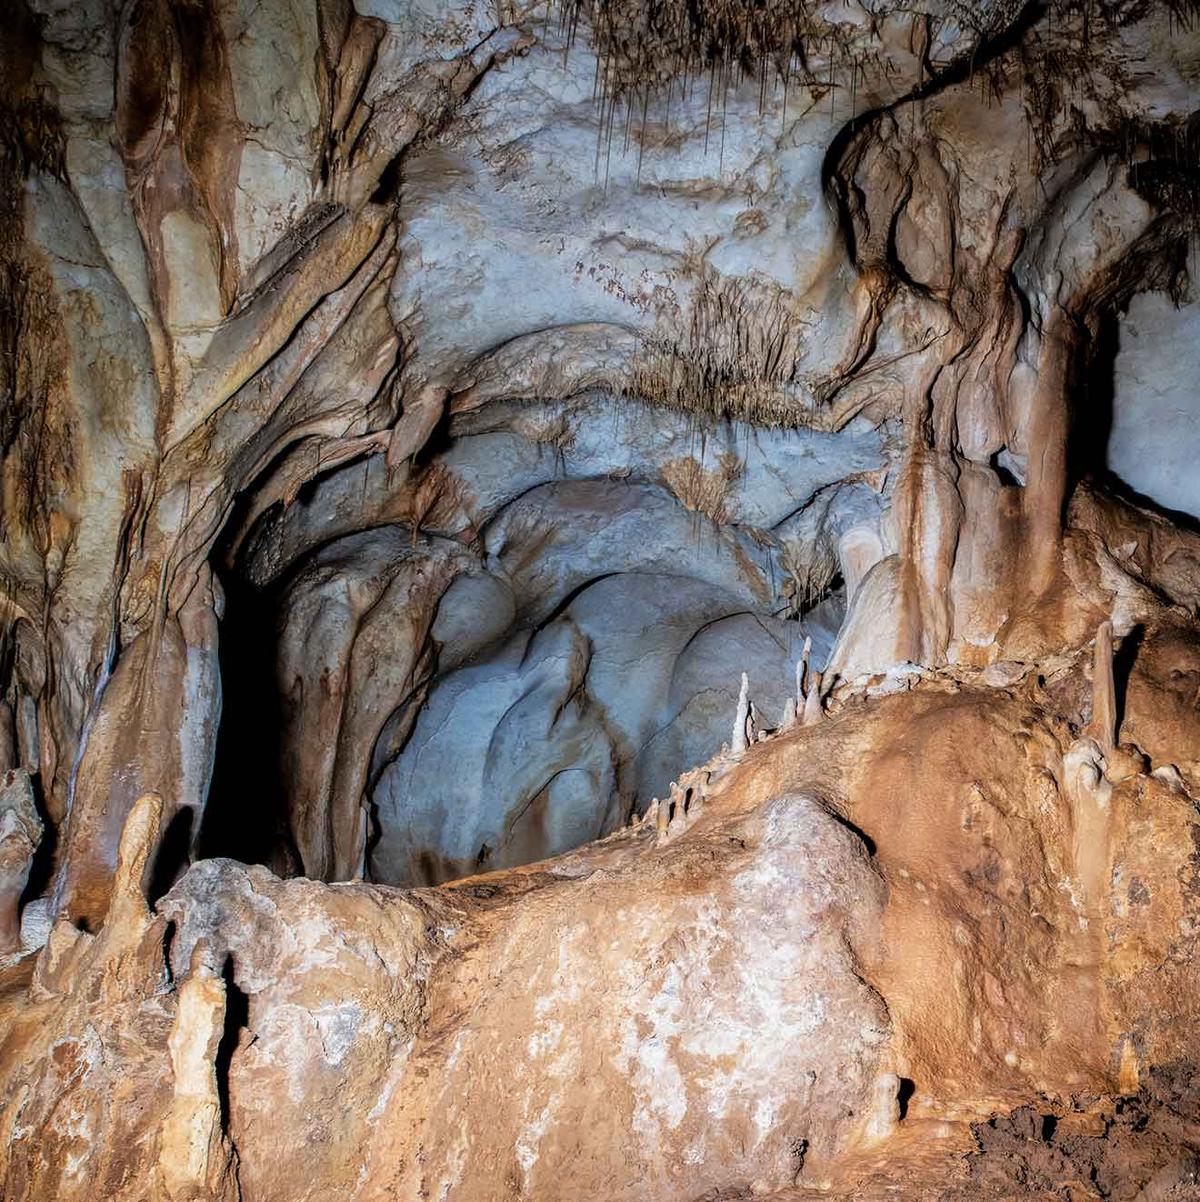 The interior of Cueva del Arco. (Courtesy of Ignacio Martín Lerma)